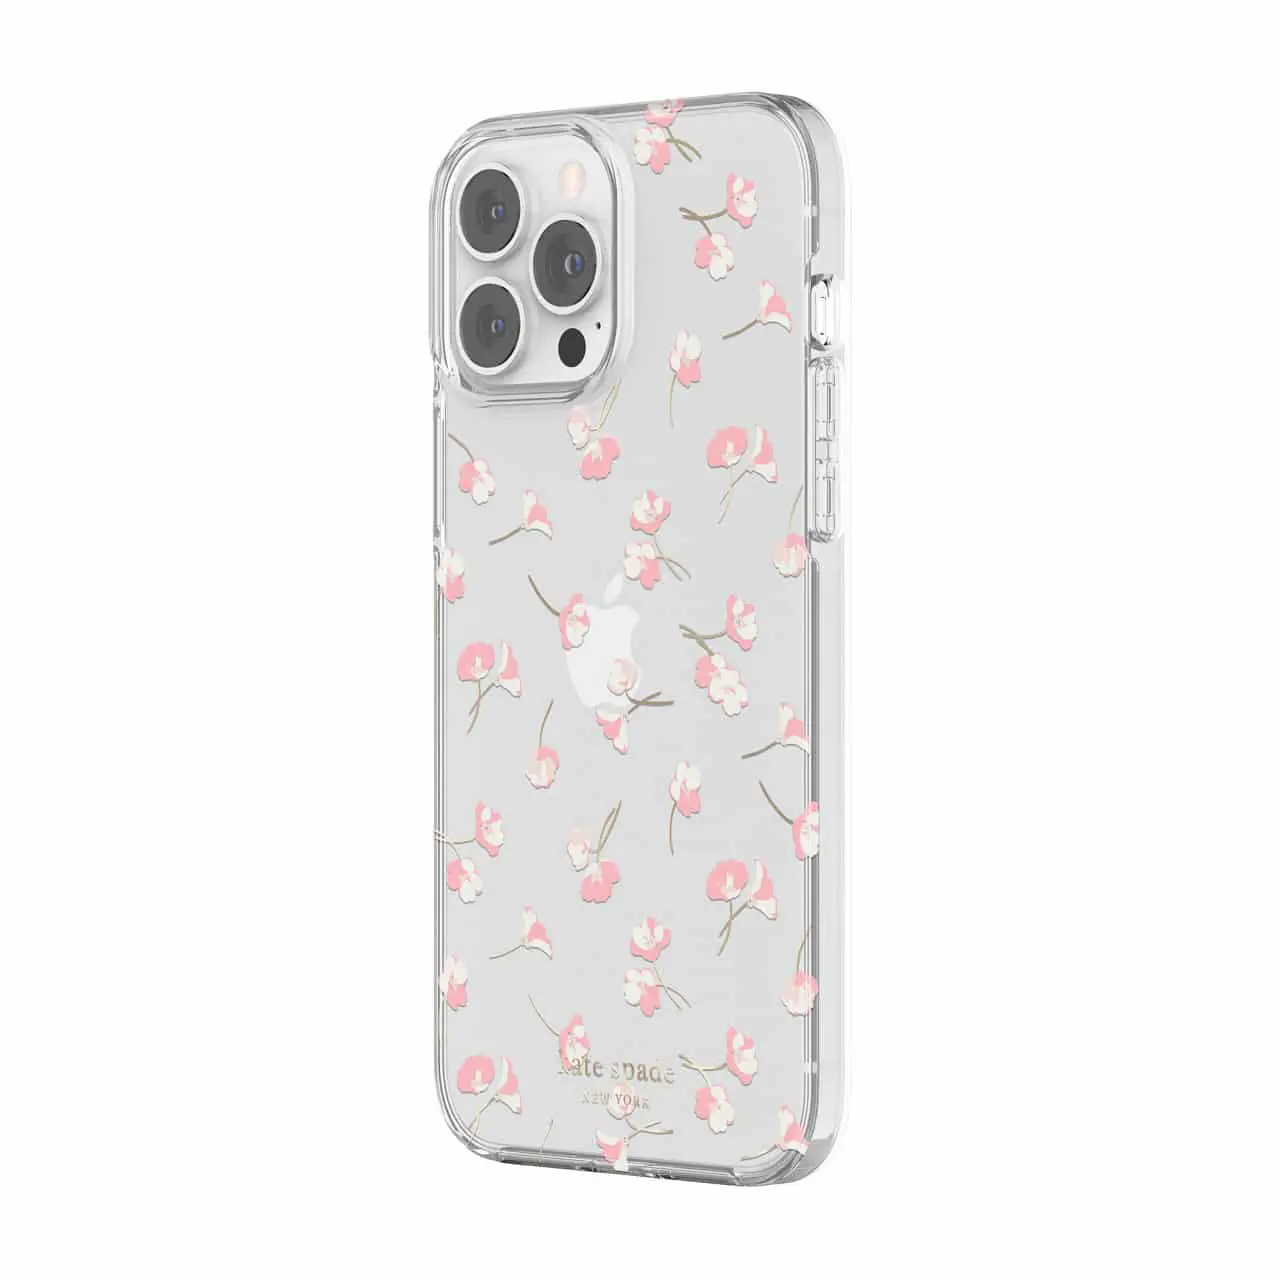 เคส Kate Spade New York รุ่น Protective Hardshell Case - iPhone 13 Pro Max - Falling Poppies Blush